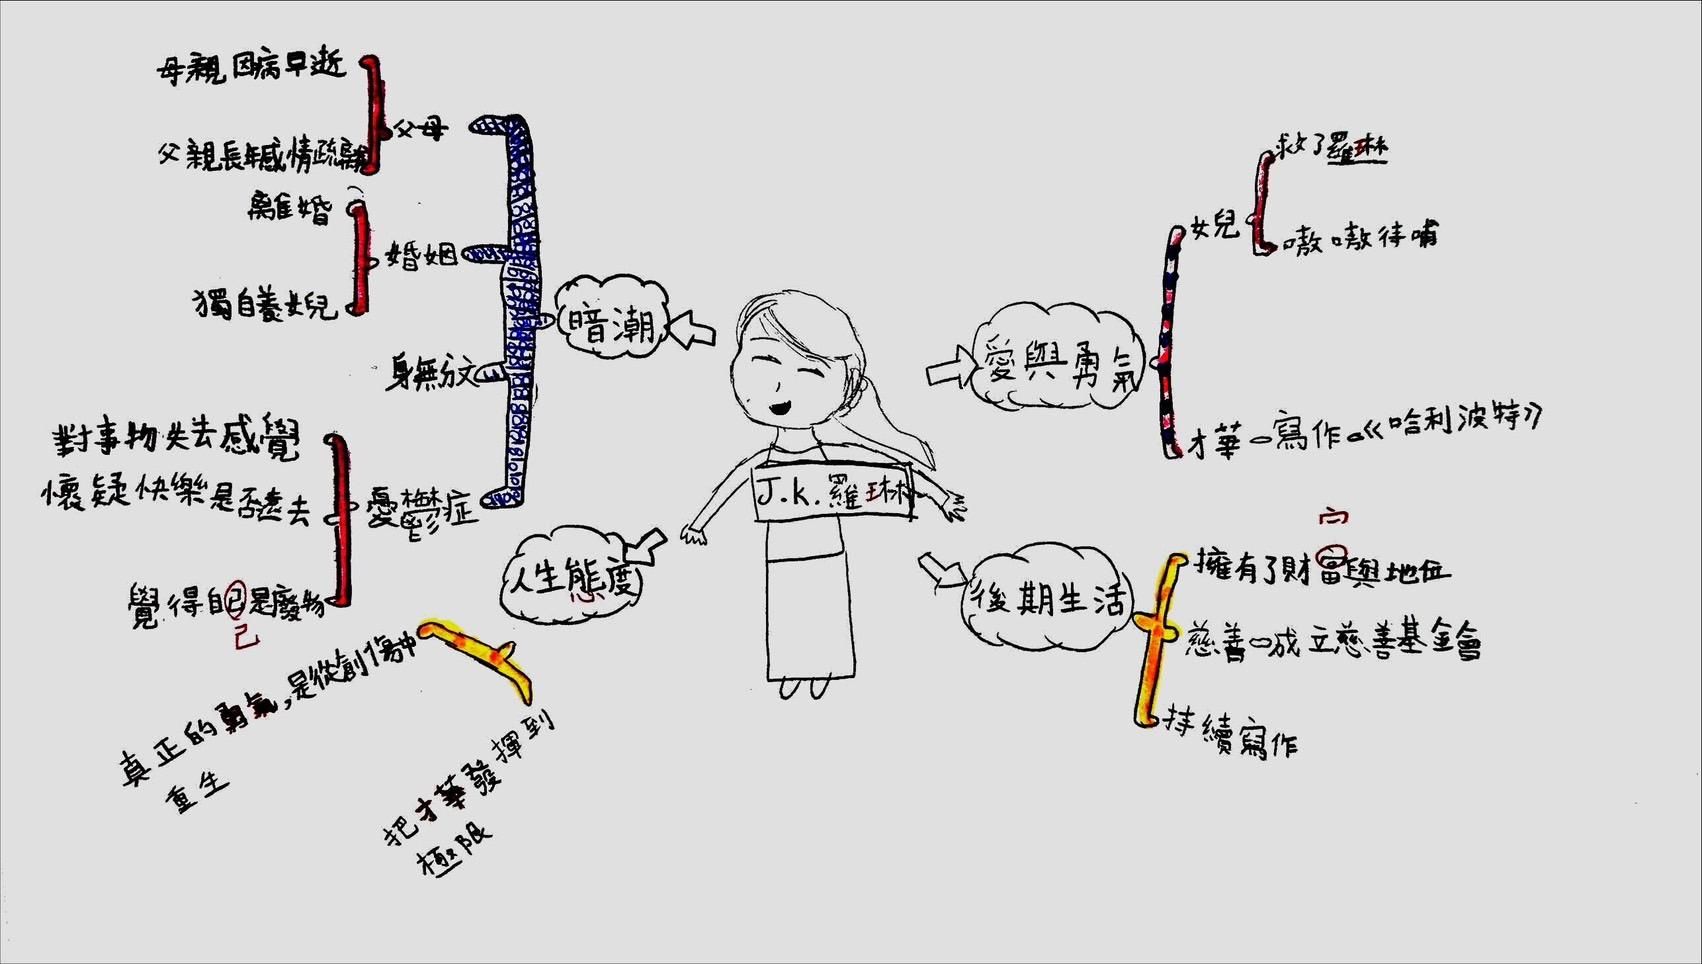 學生繪製的JK羅琳心智圖。圖片提供：Lulu老師